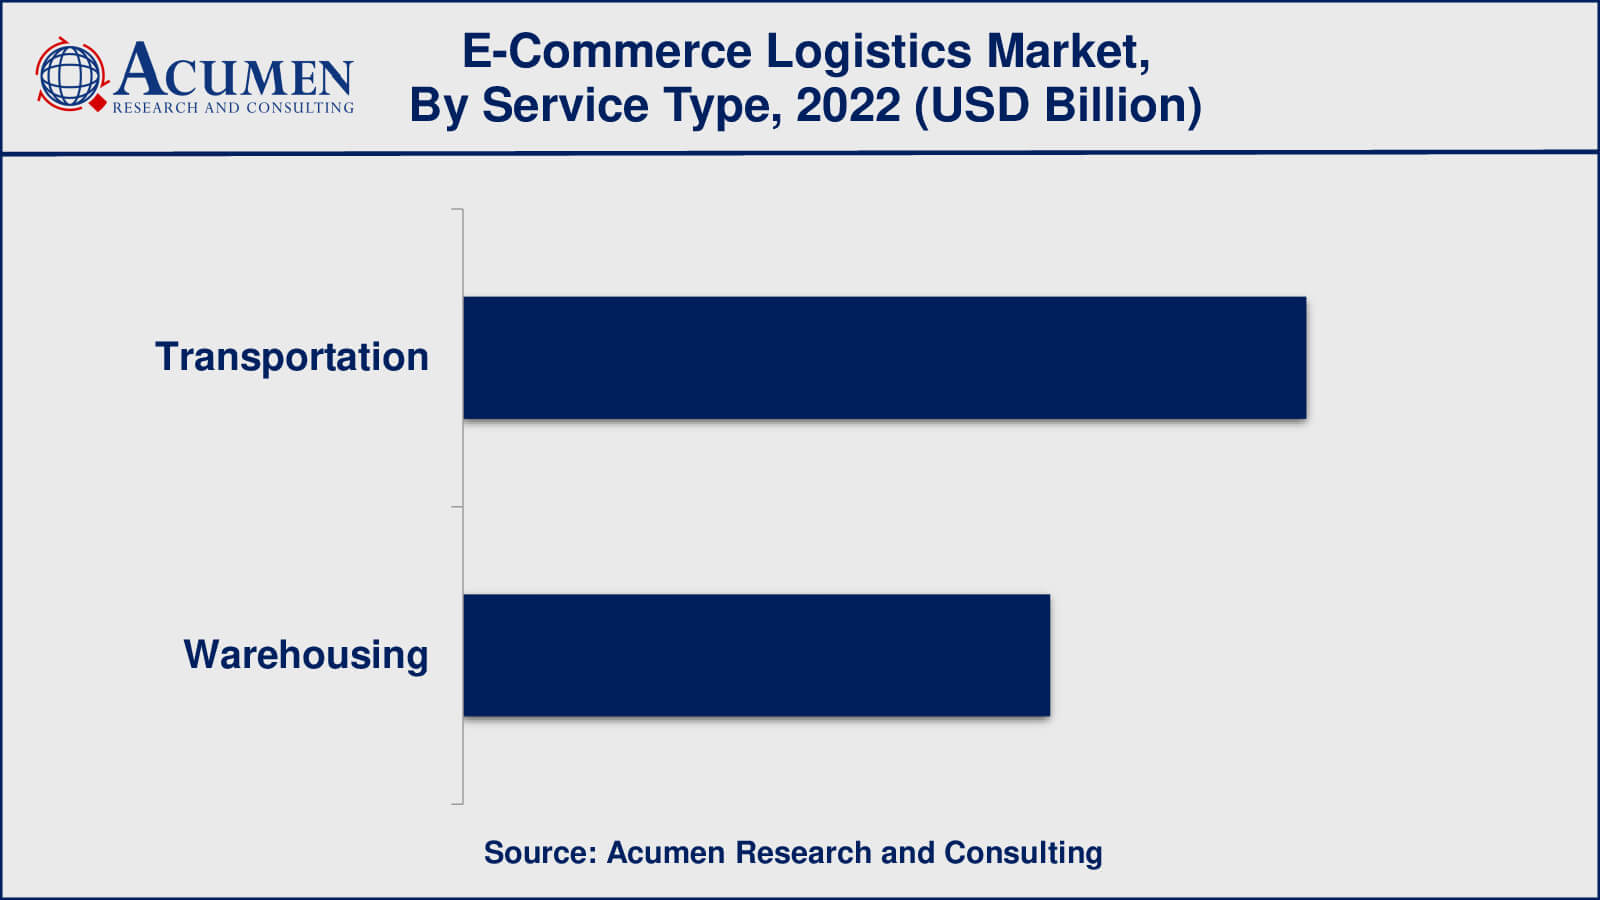 E-Commerce Logistics Market Insights